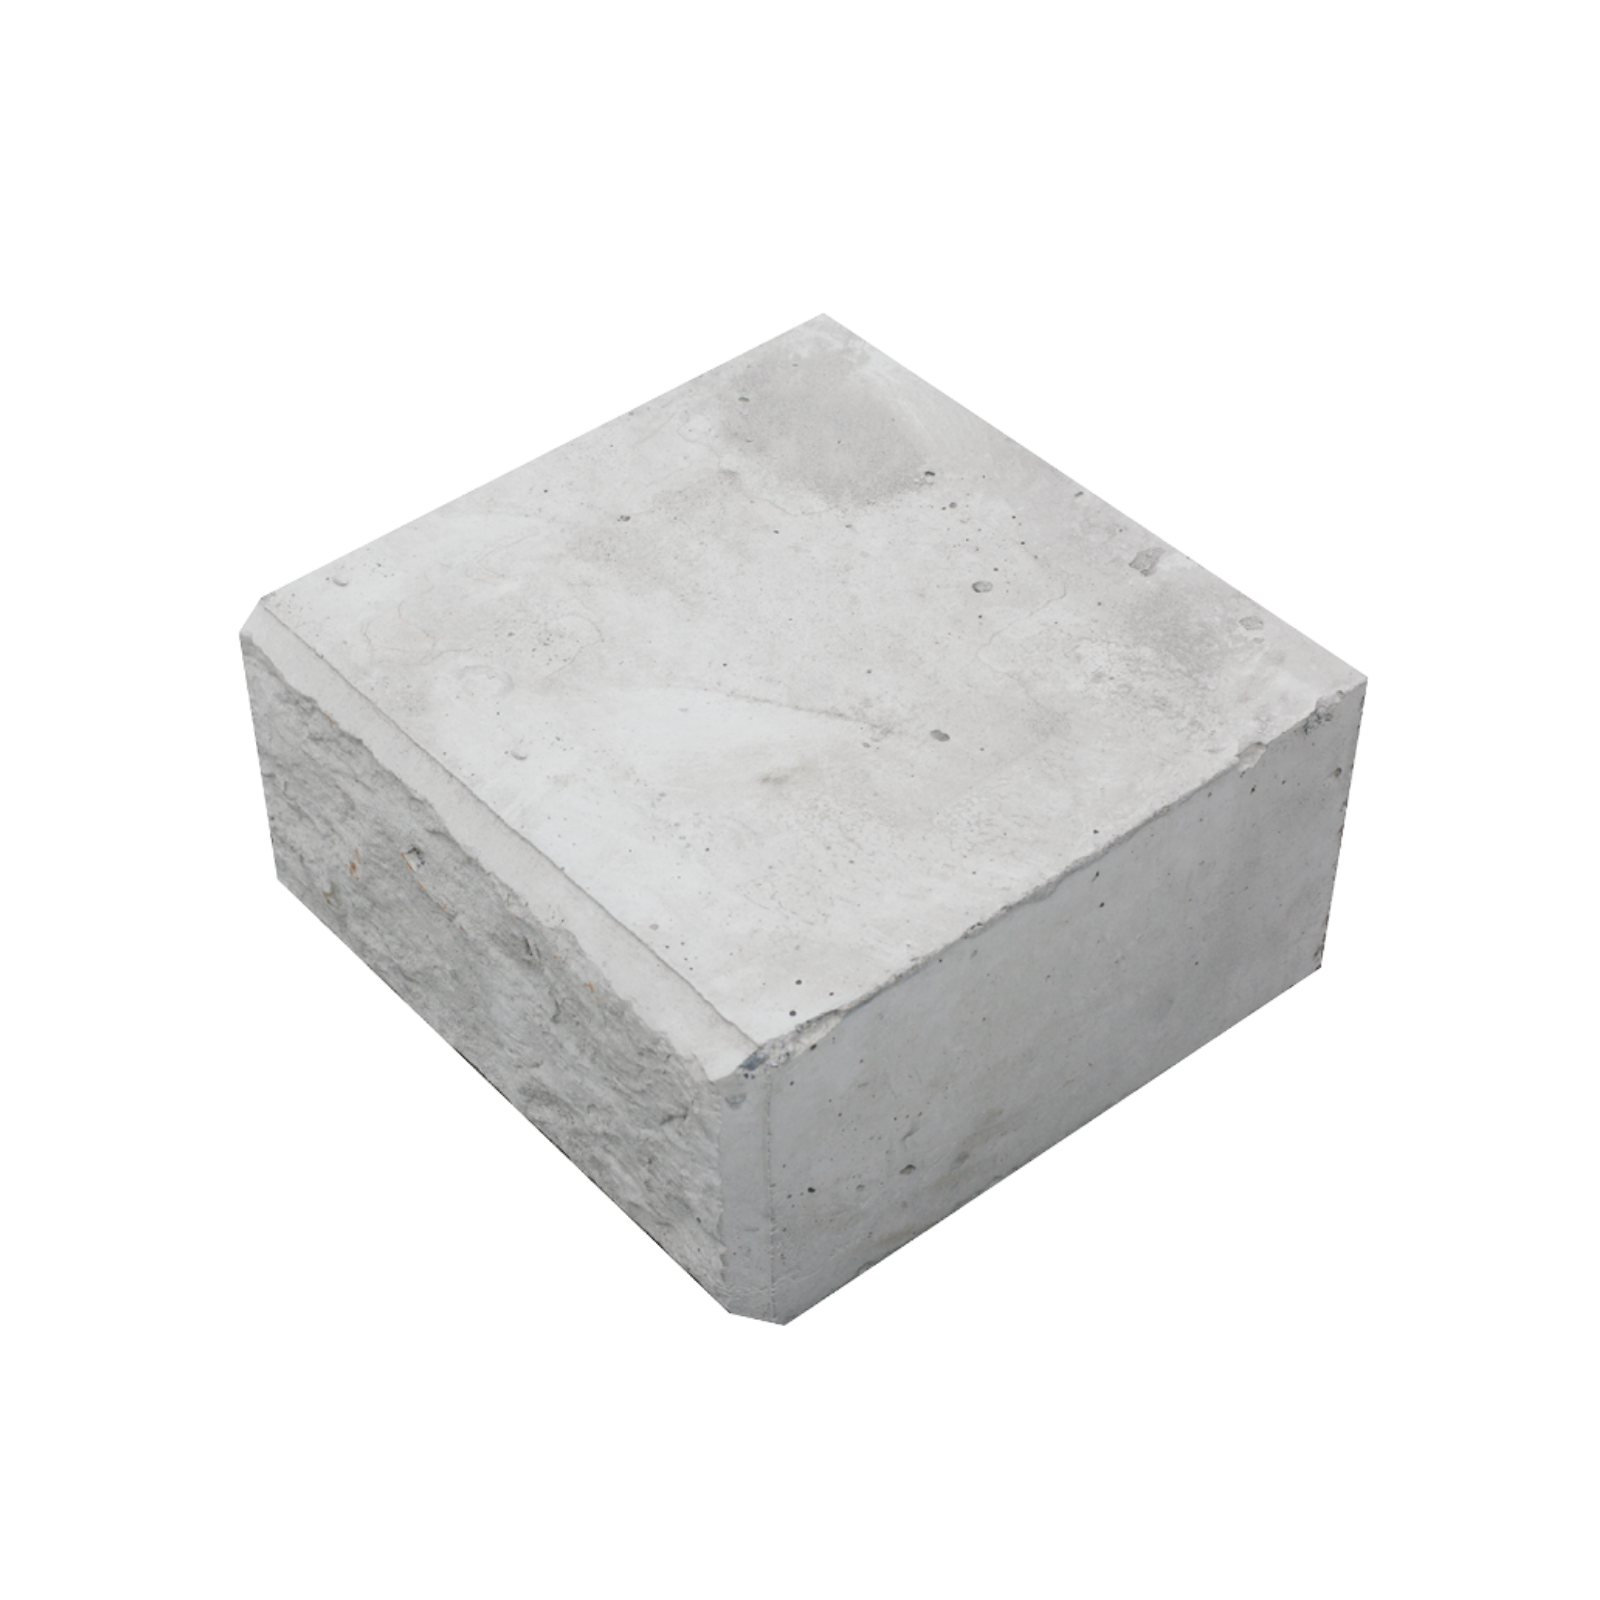 Perspective shot of a half capper Stonebloc concrete block